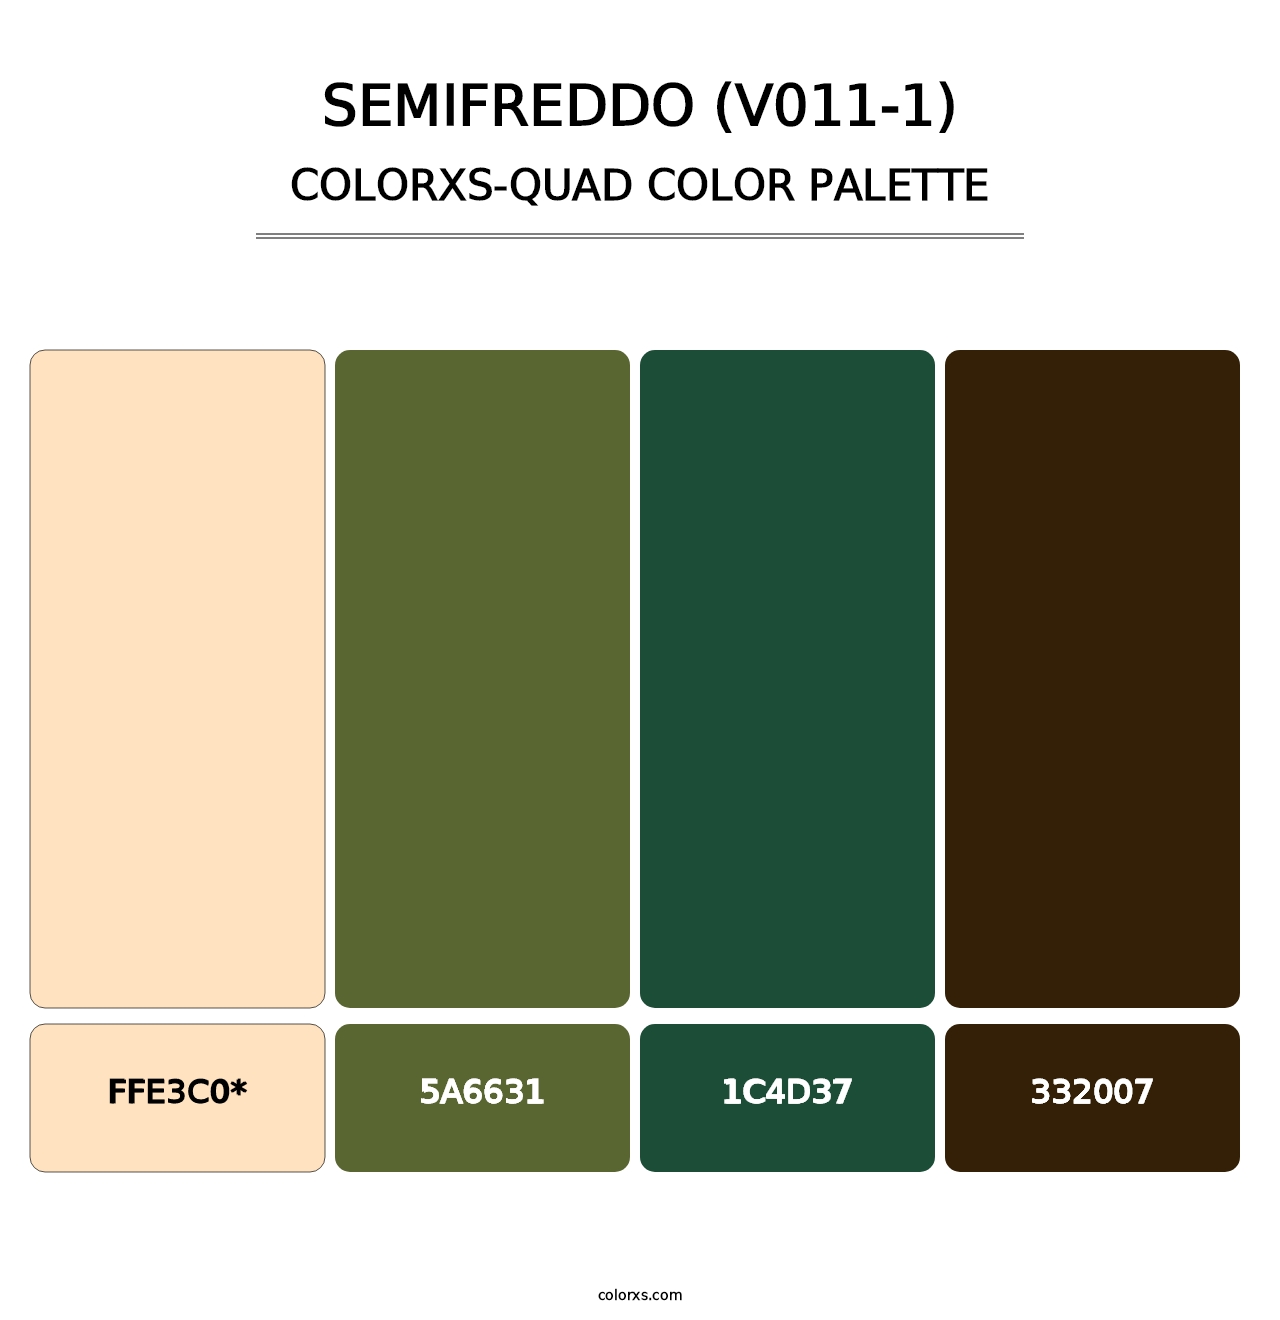 Semifreddo (V011-1) - Colorxs Quad Palette